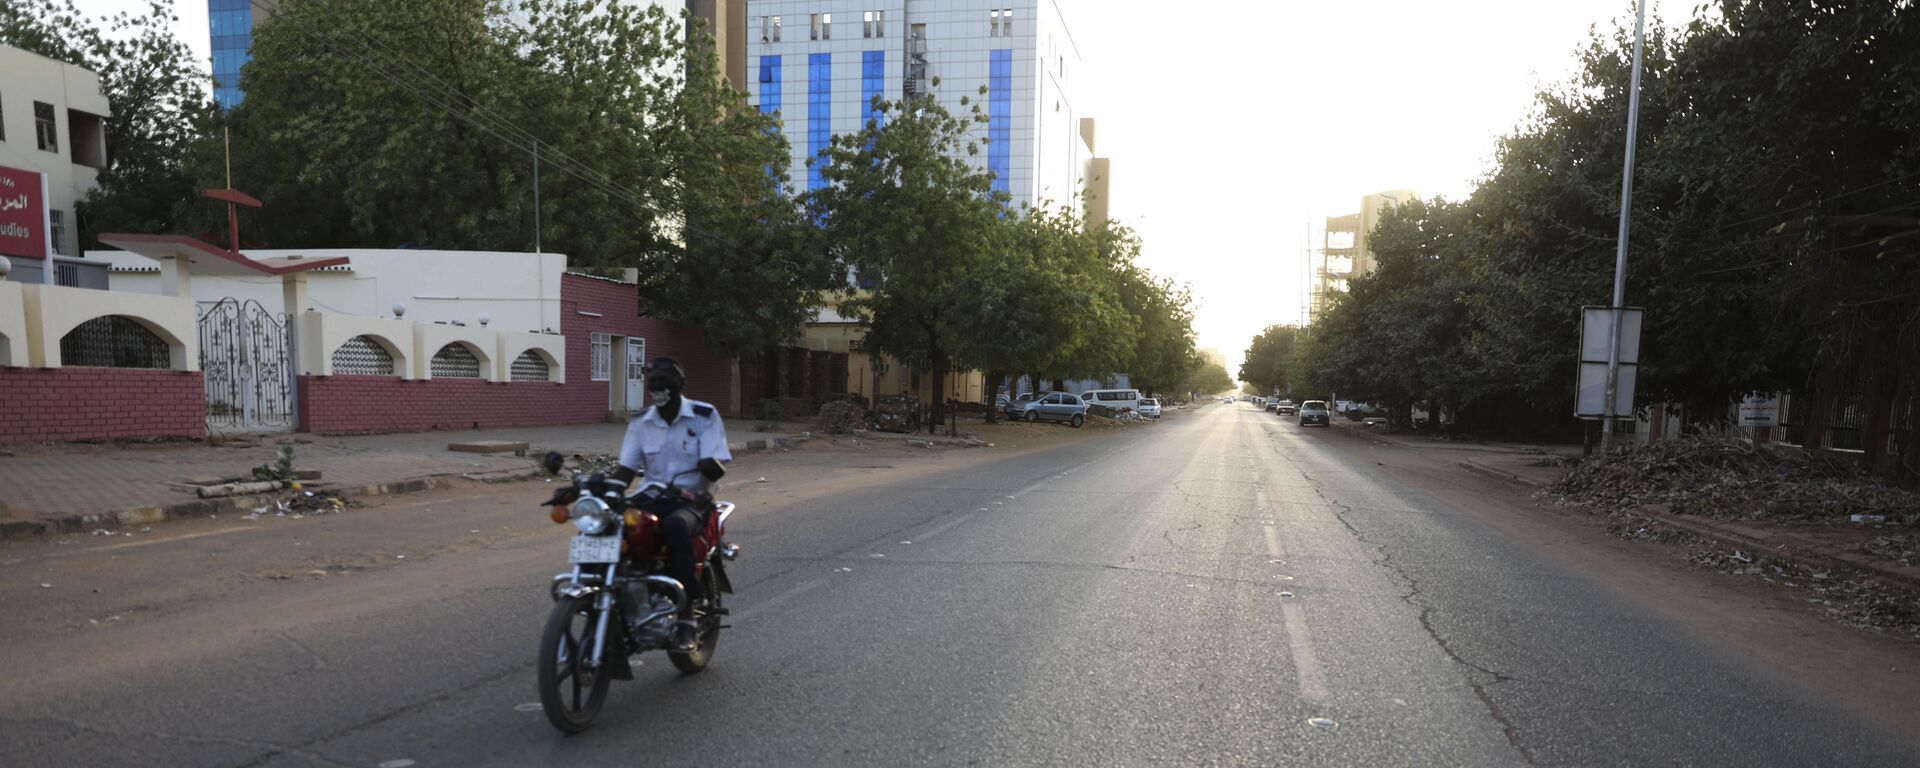 شارع فارغ في الخرطوم بالسودان حيث أمرت الحكومة السودانية بحظر التجول ليلاً لمنع انتشار فيروس كورونا - سبوتنيك عربي, 1920, 07.06.2022